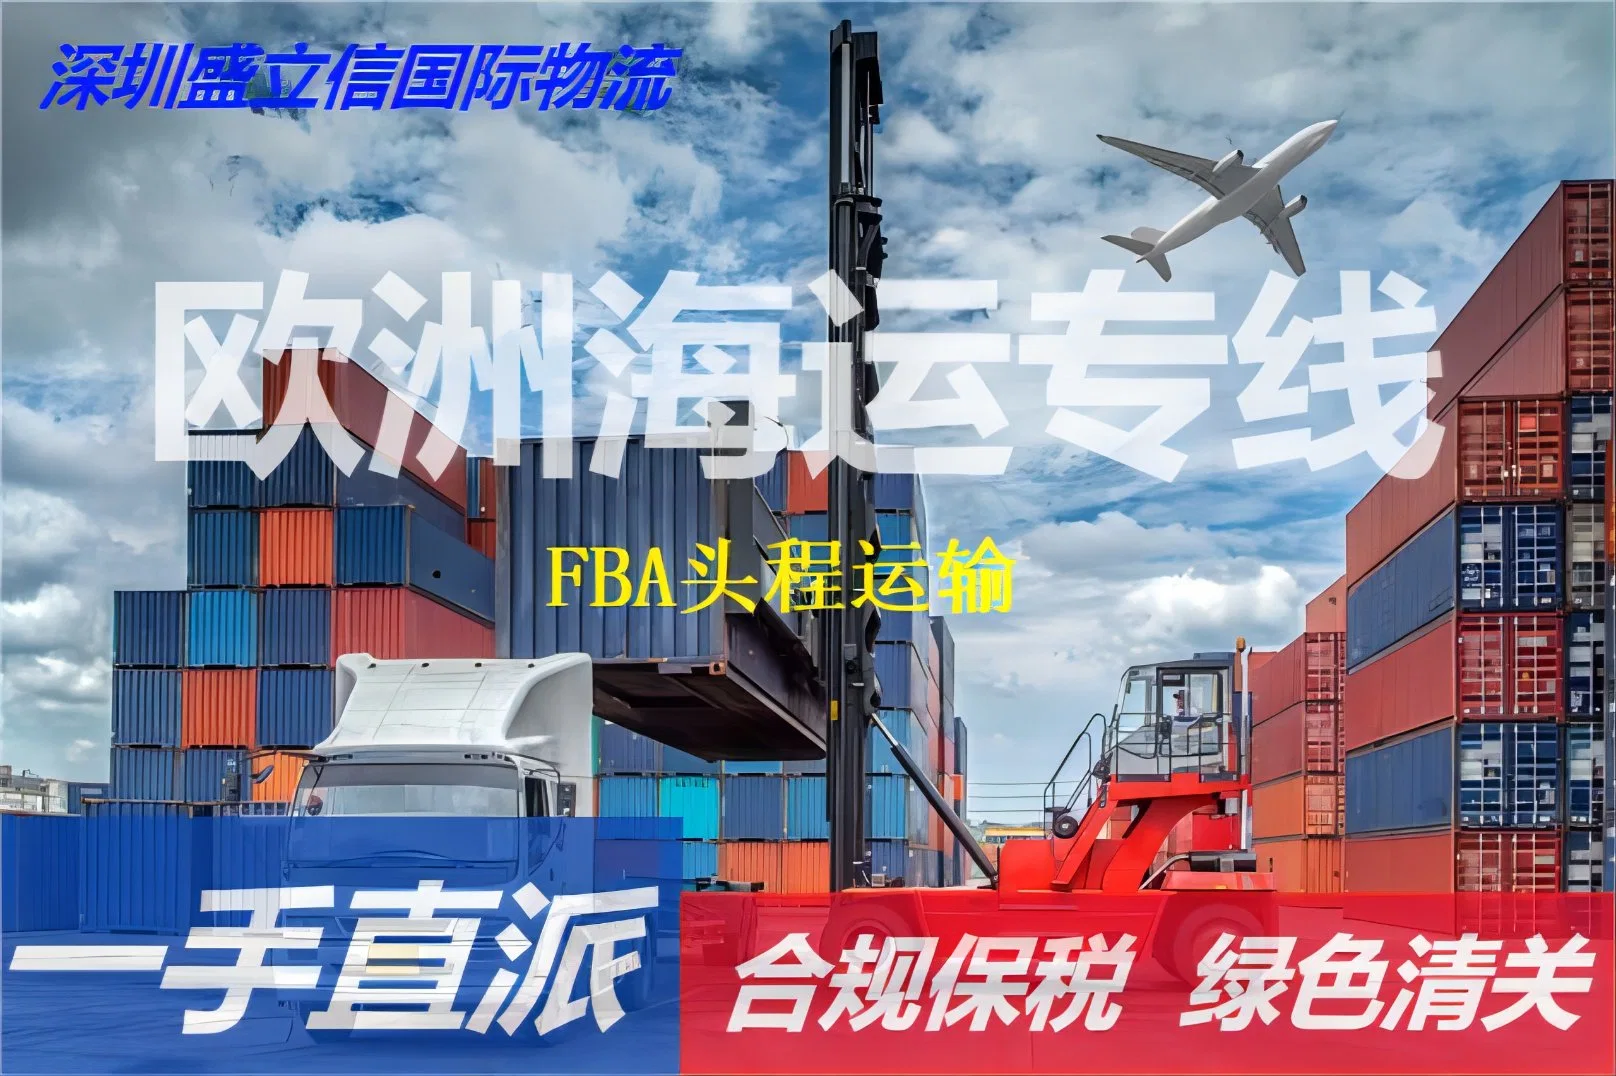 Надежный морской транспорт из Китая в США и. Соединенное Королевство Великобритании и Северной Ирландии - Складские склады для этикетирования грузов FBA